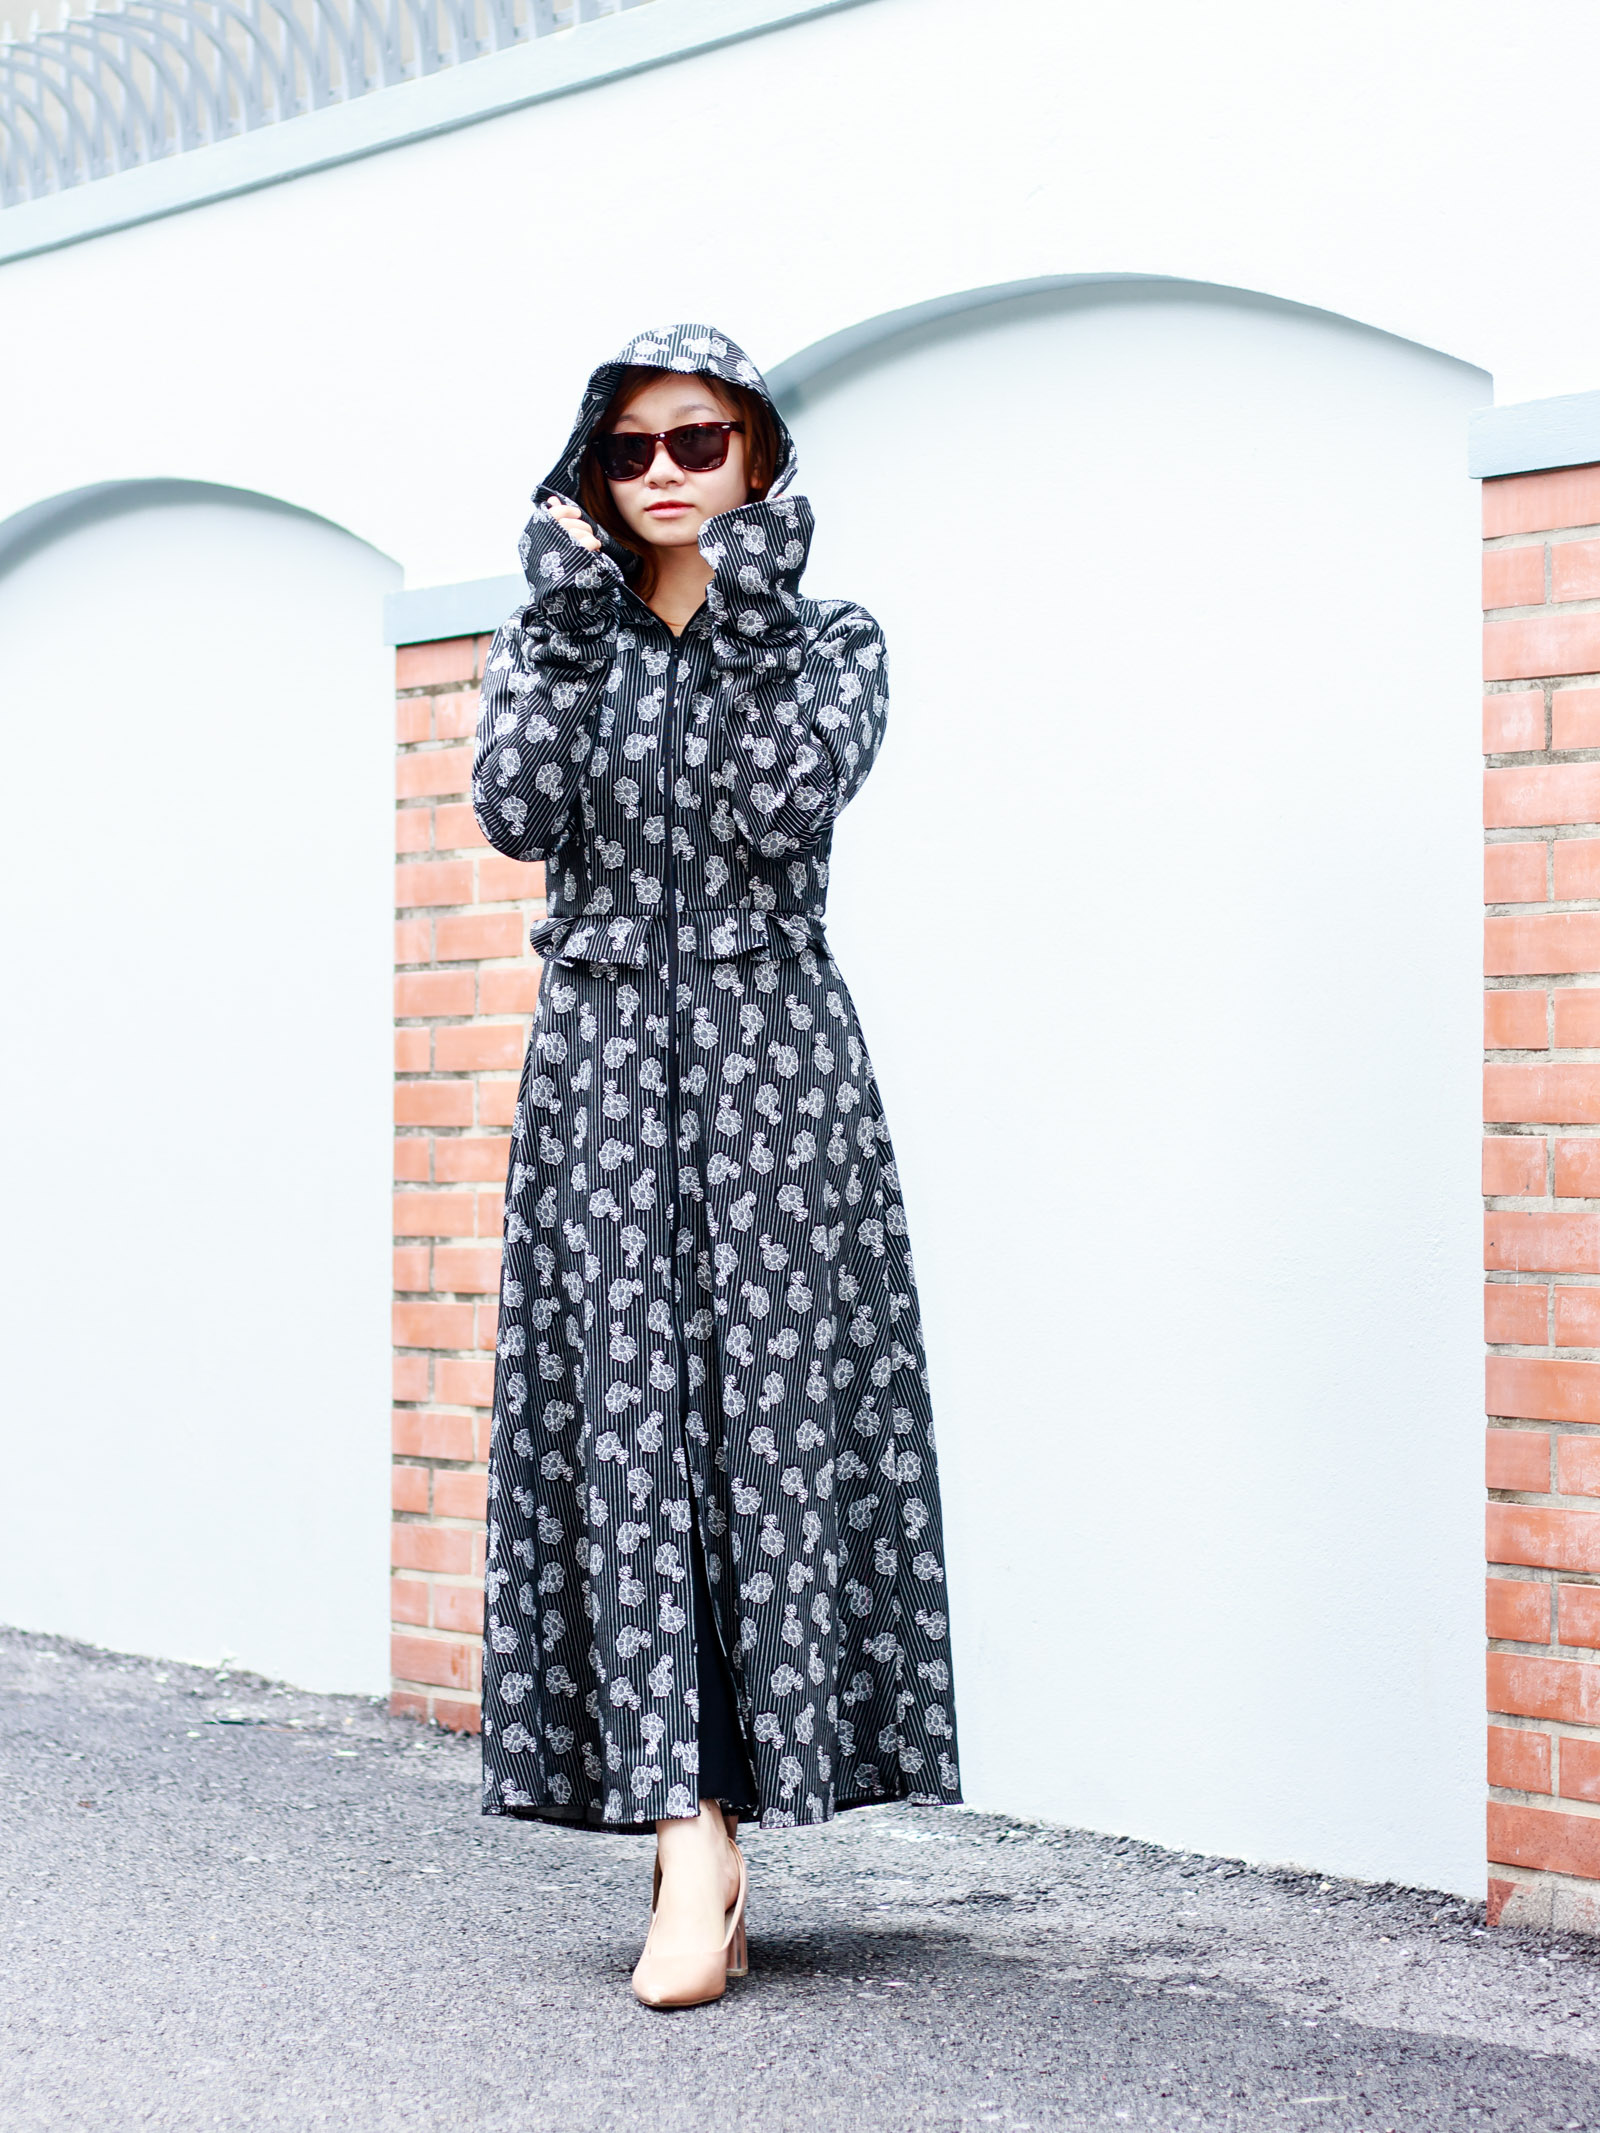 Váy chống nắng dạng quần siêu tiện lợi Hè 2019 | HK.SMART SHOP